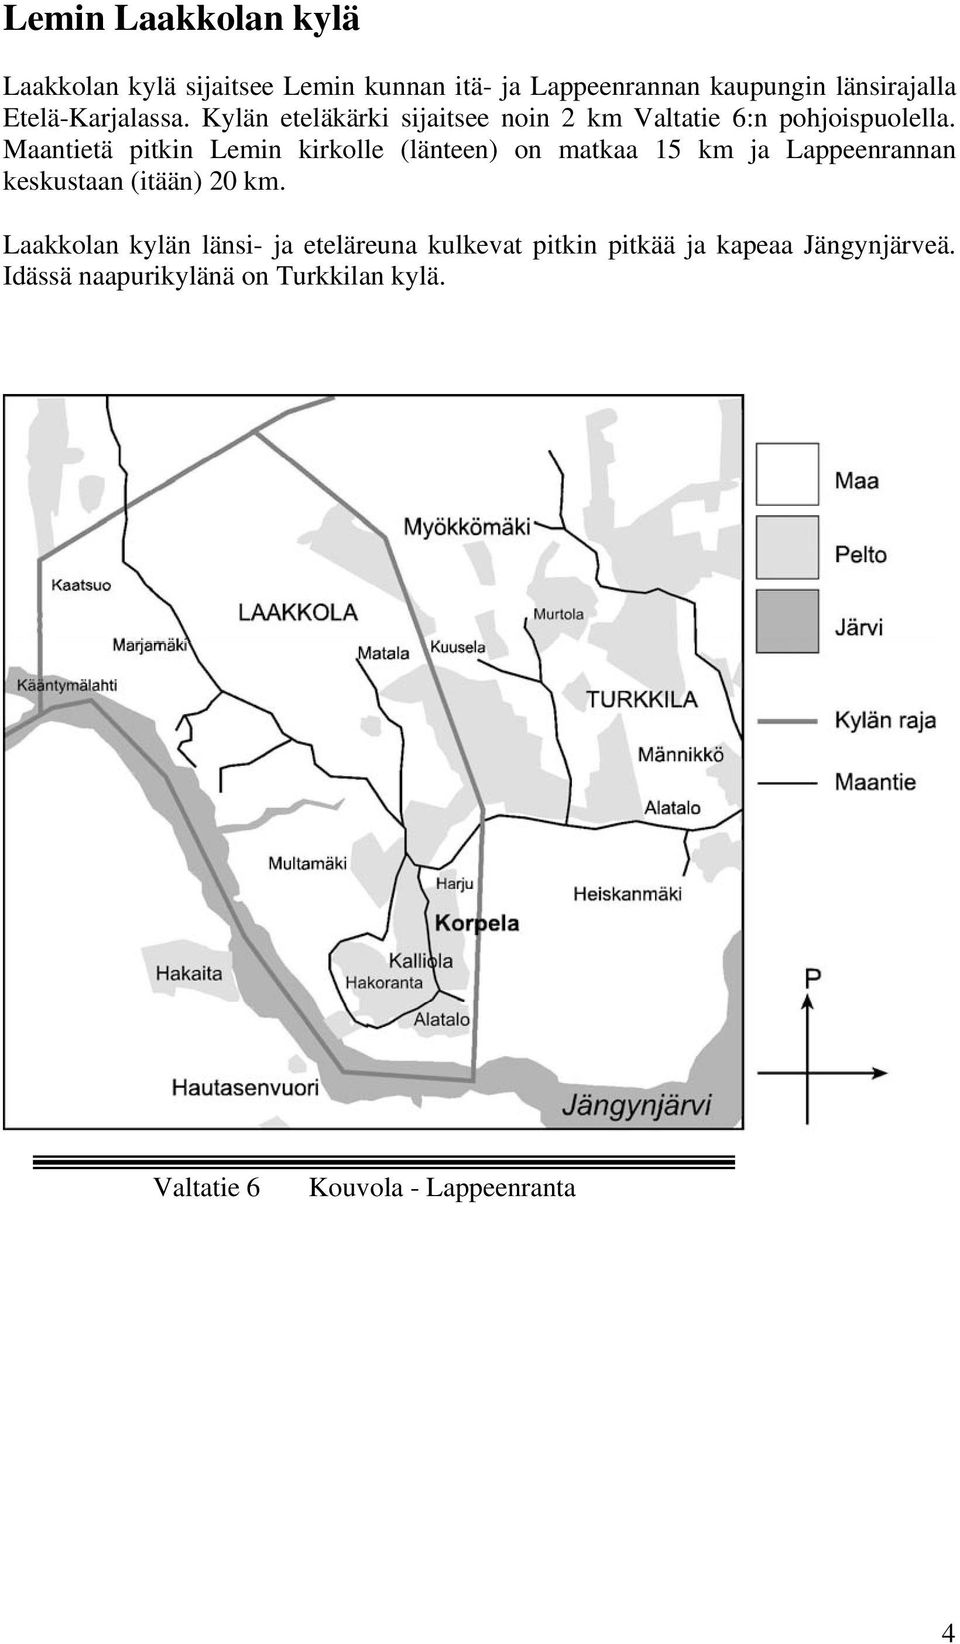 Maantietä pitkin Lemin kirkolle (länteen) on matkaa 15 km ja Lappeenrannan keskustaan (itään) 20 km.